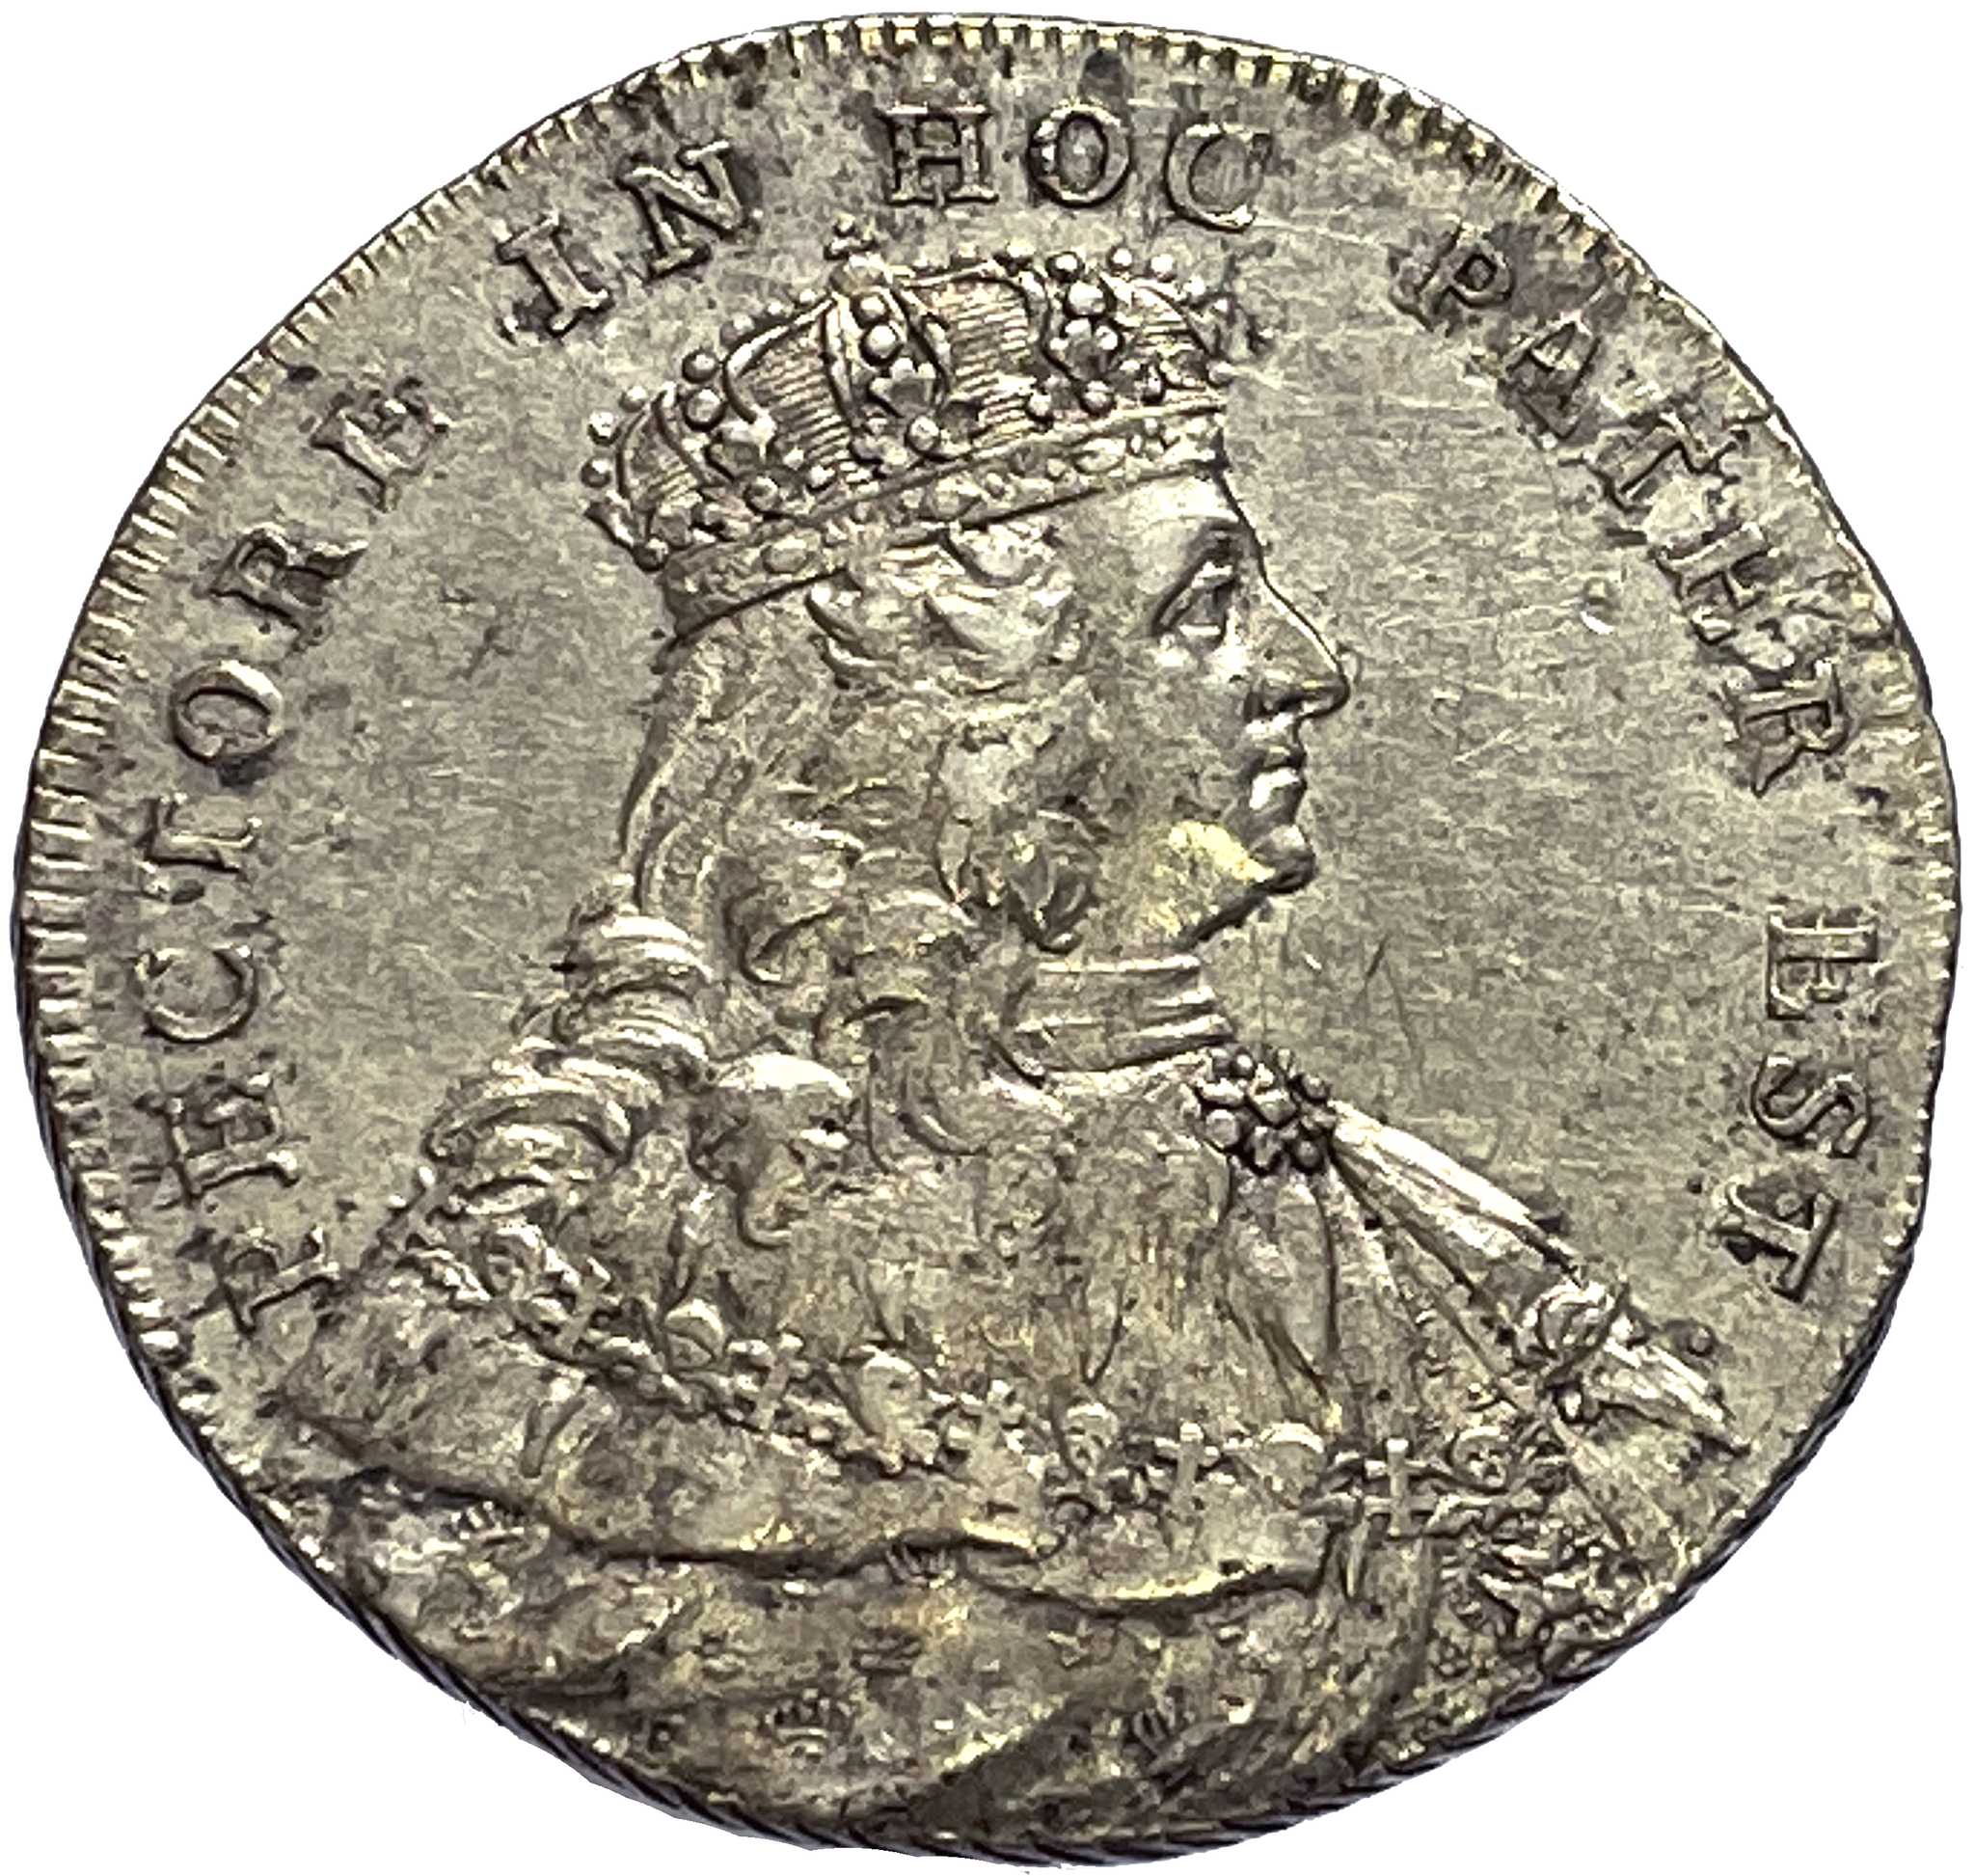 Adolf Fredrik - 2 Mark 1751 - Kastmynt till konungens kröning